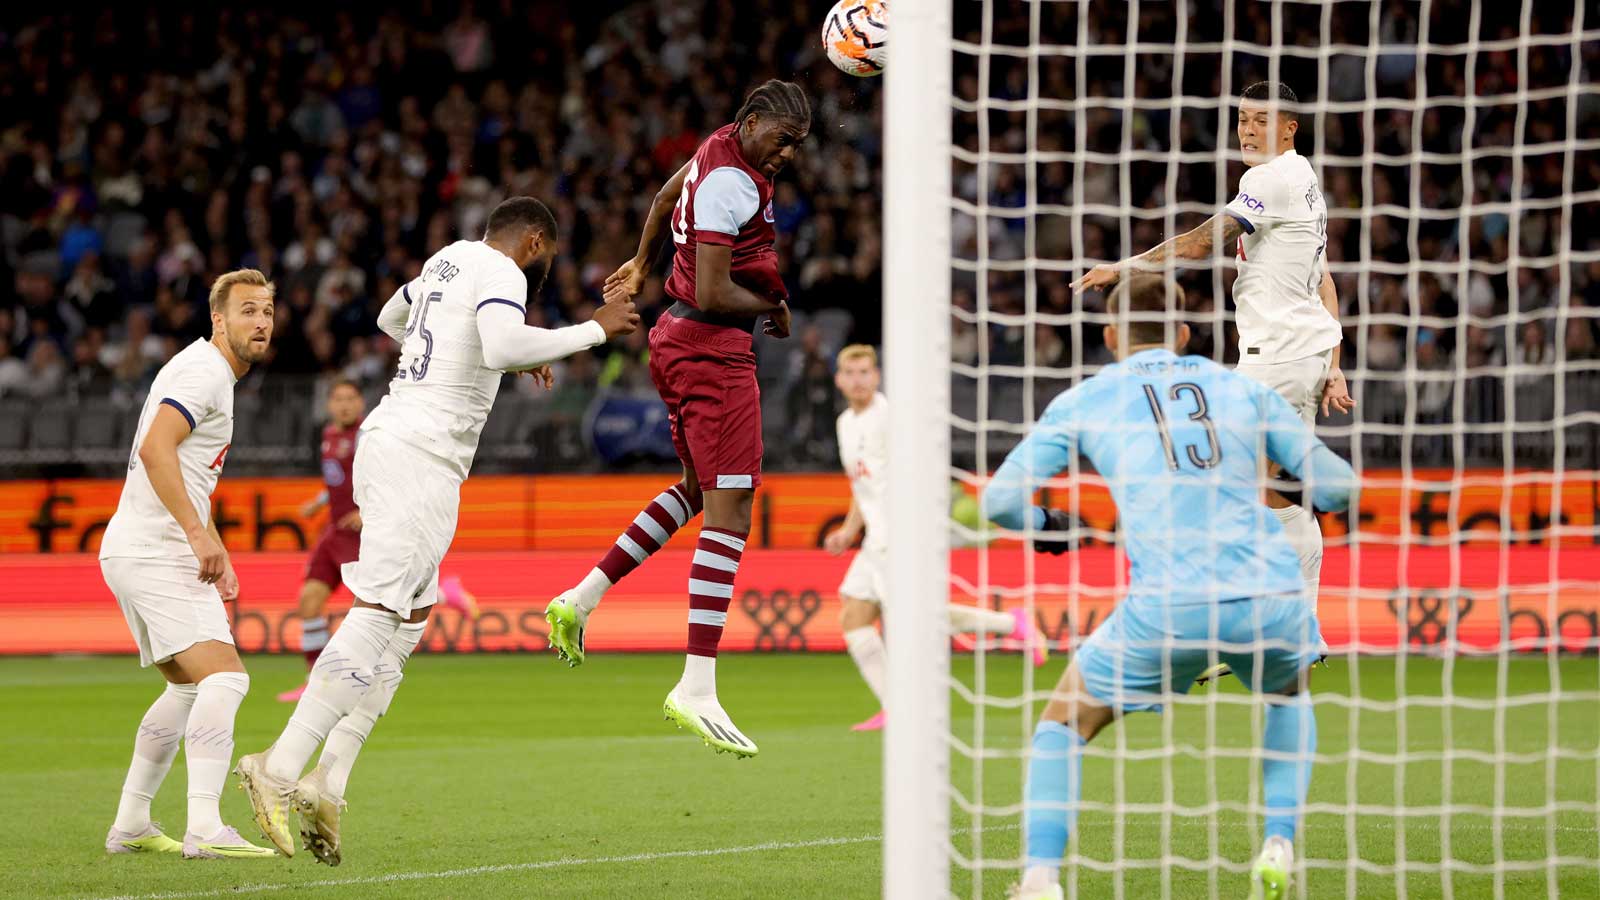 Divin Mubama scores against Tottenham Hotspur